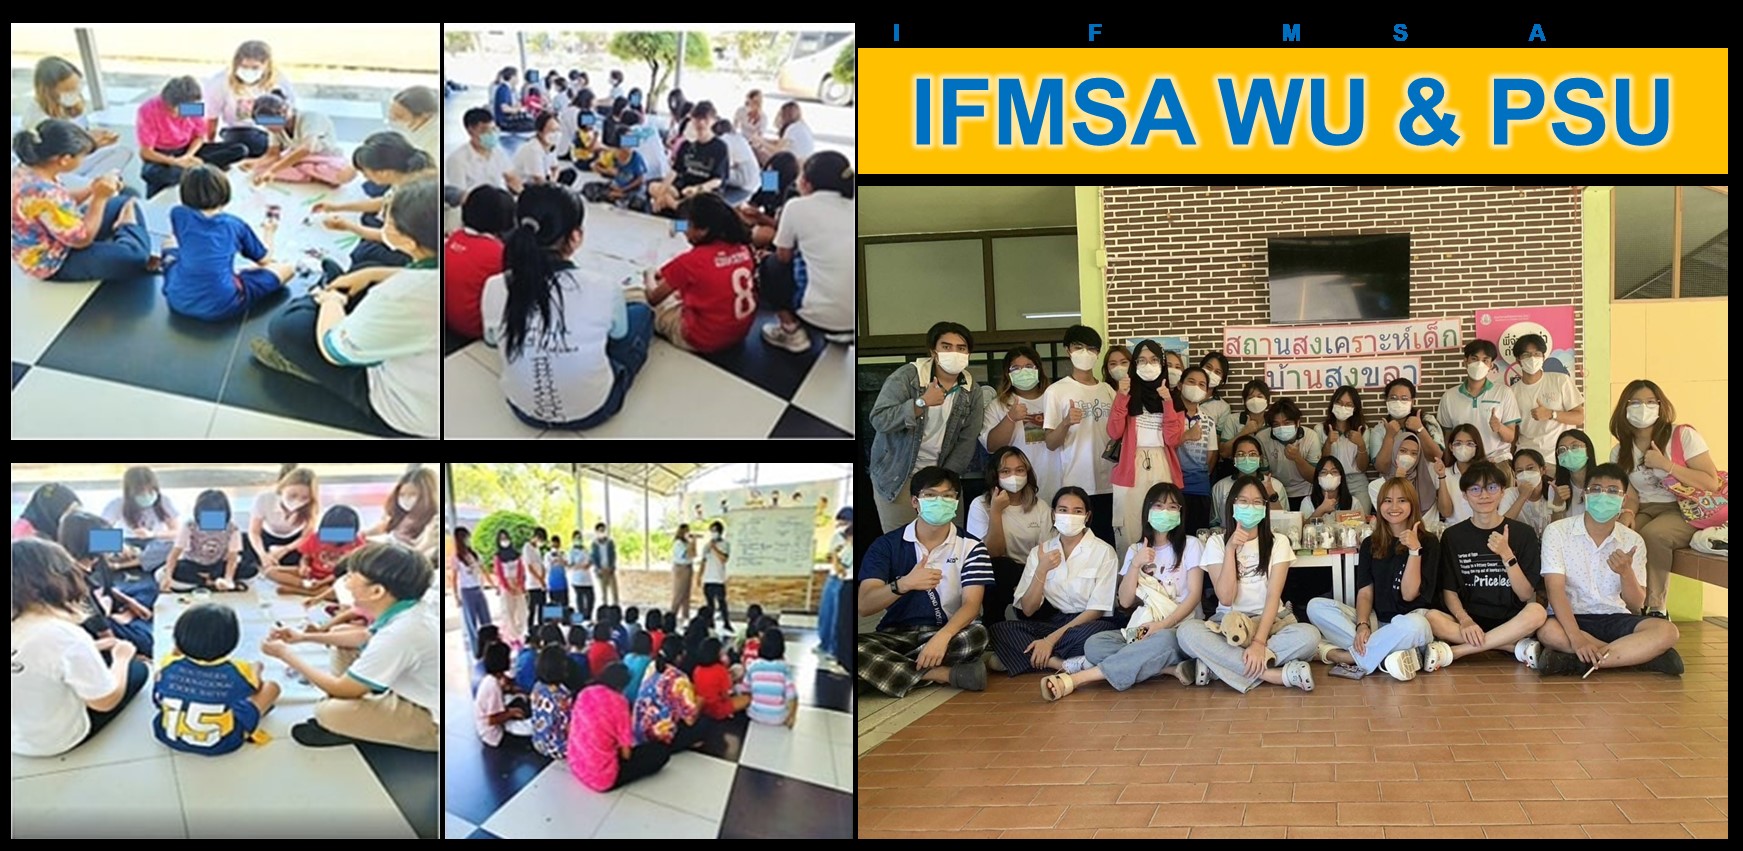 นักศึกษาแพทย์ ม.วลัยลักษณ์ ร่วมจัดโครงการ IFMSA Health Share by IFMSA WU & PSU